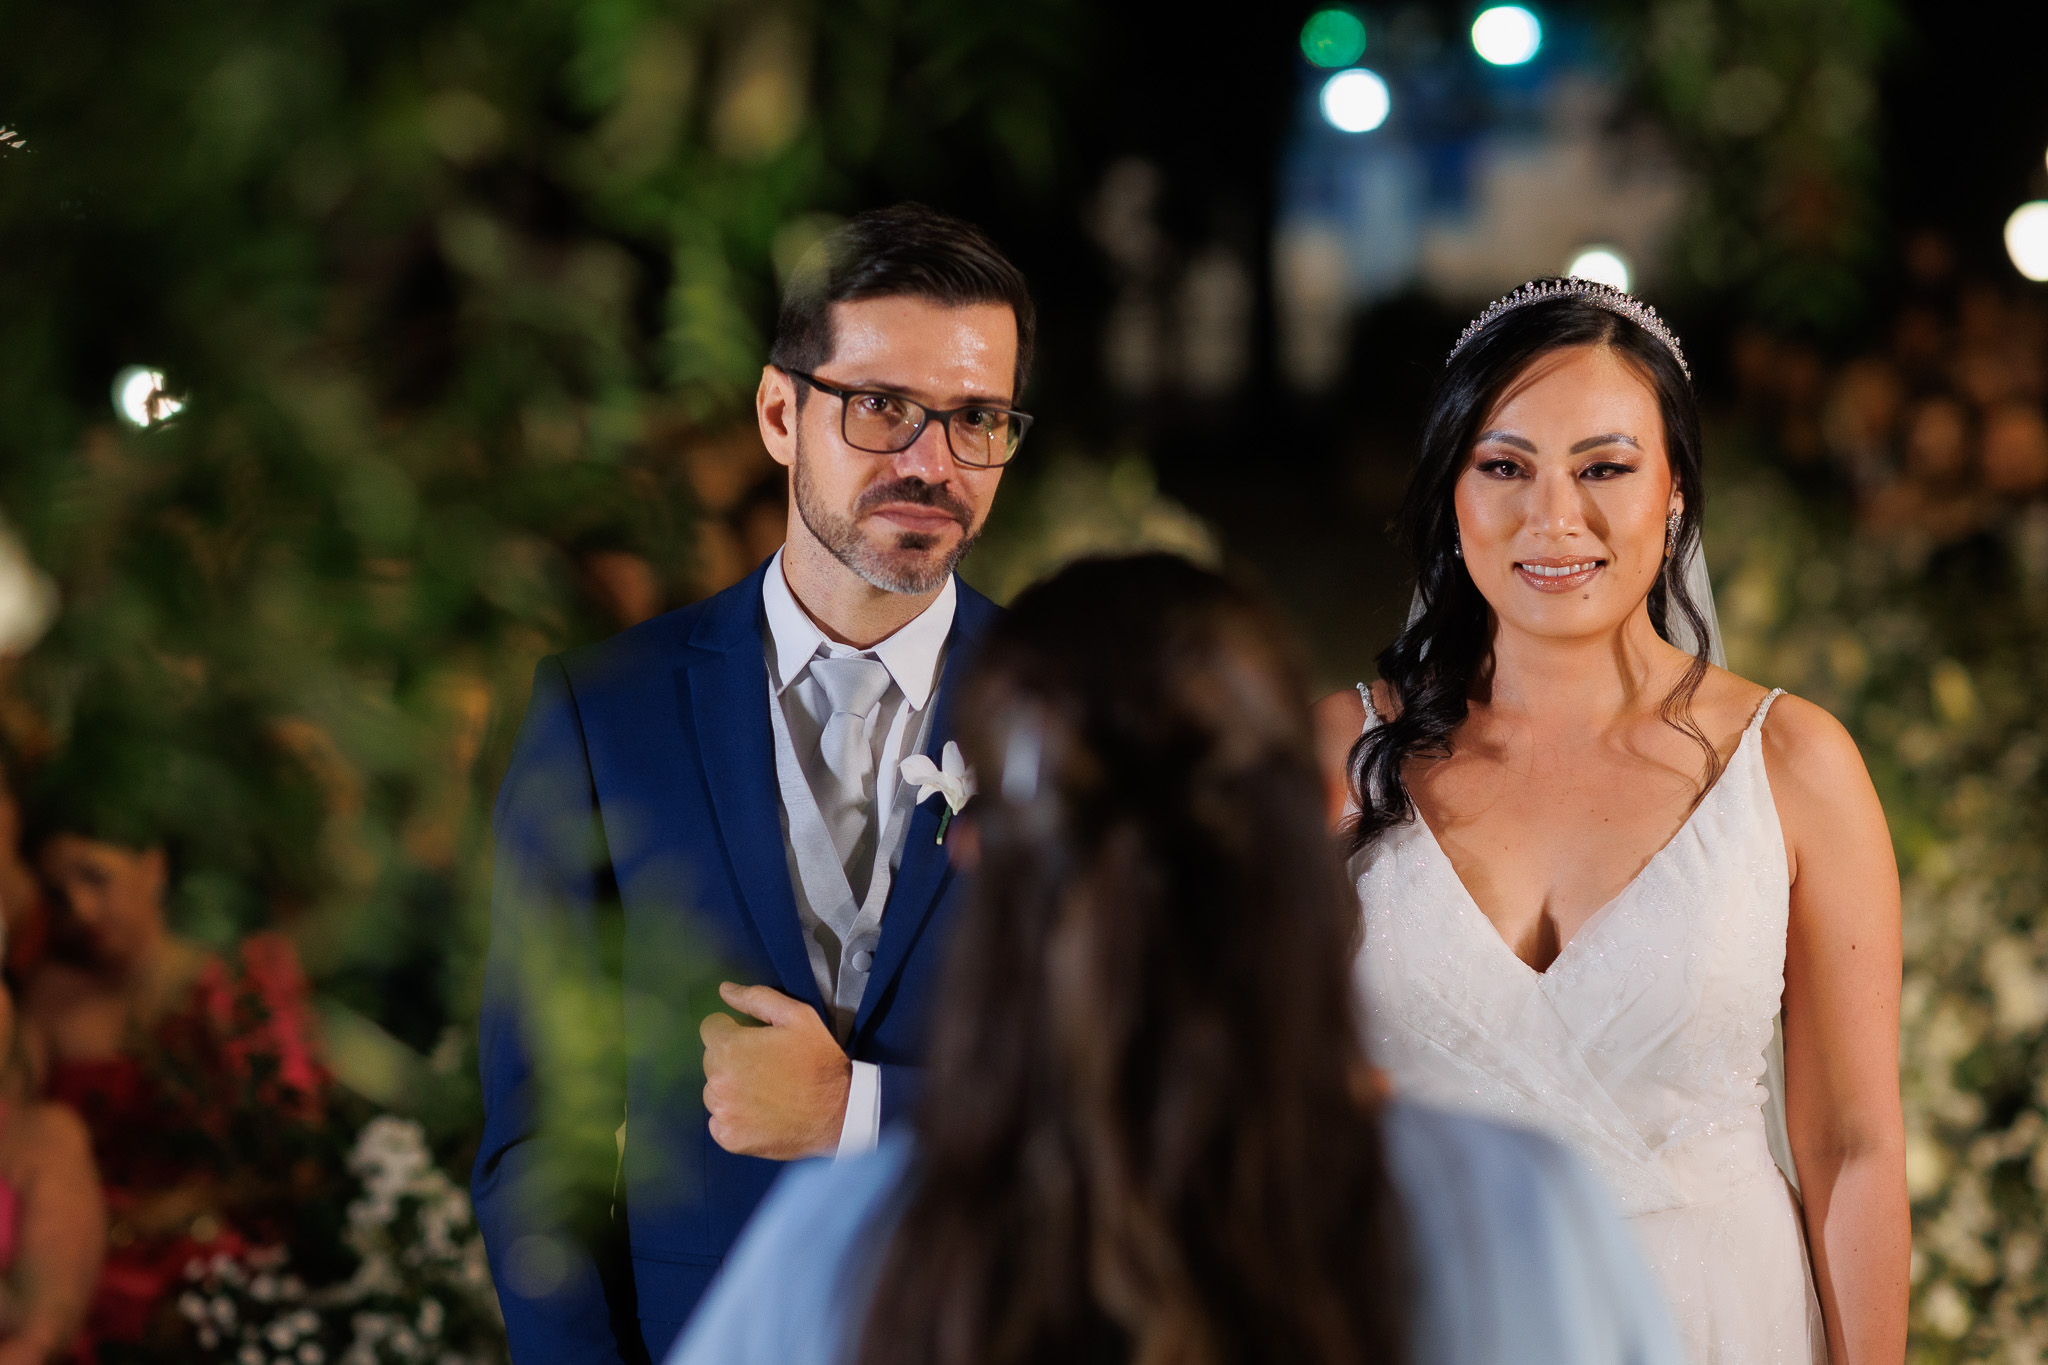 Casamento clássico: noivos na cerimônia - Fotos Emerson Fiuza